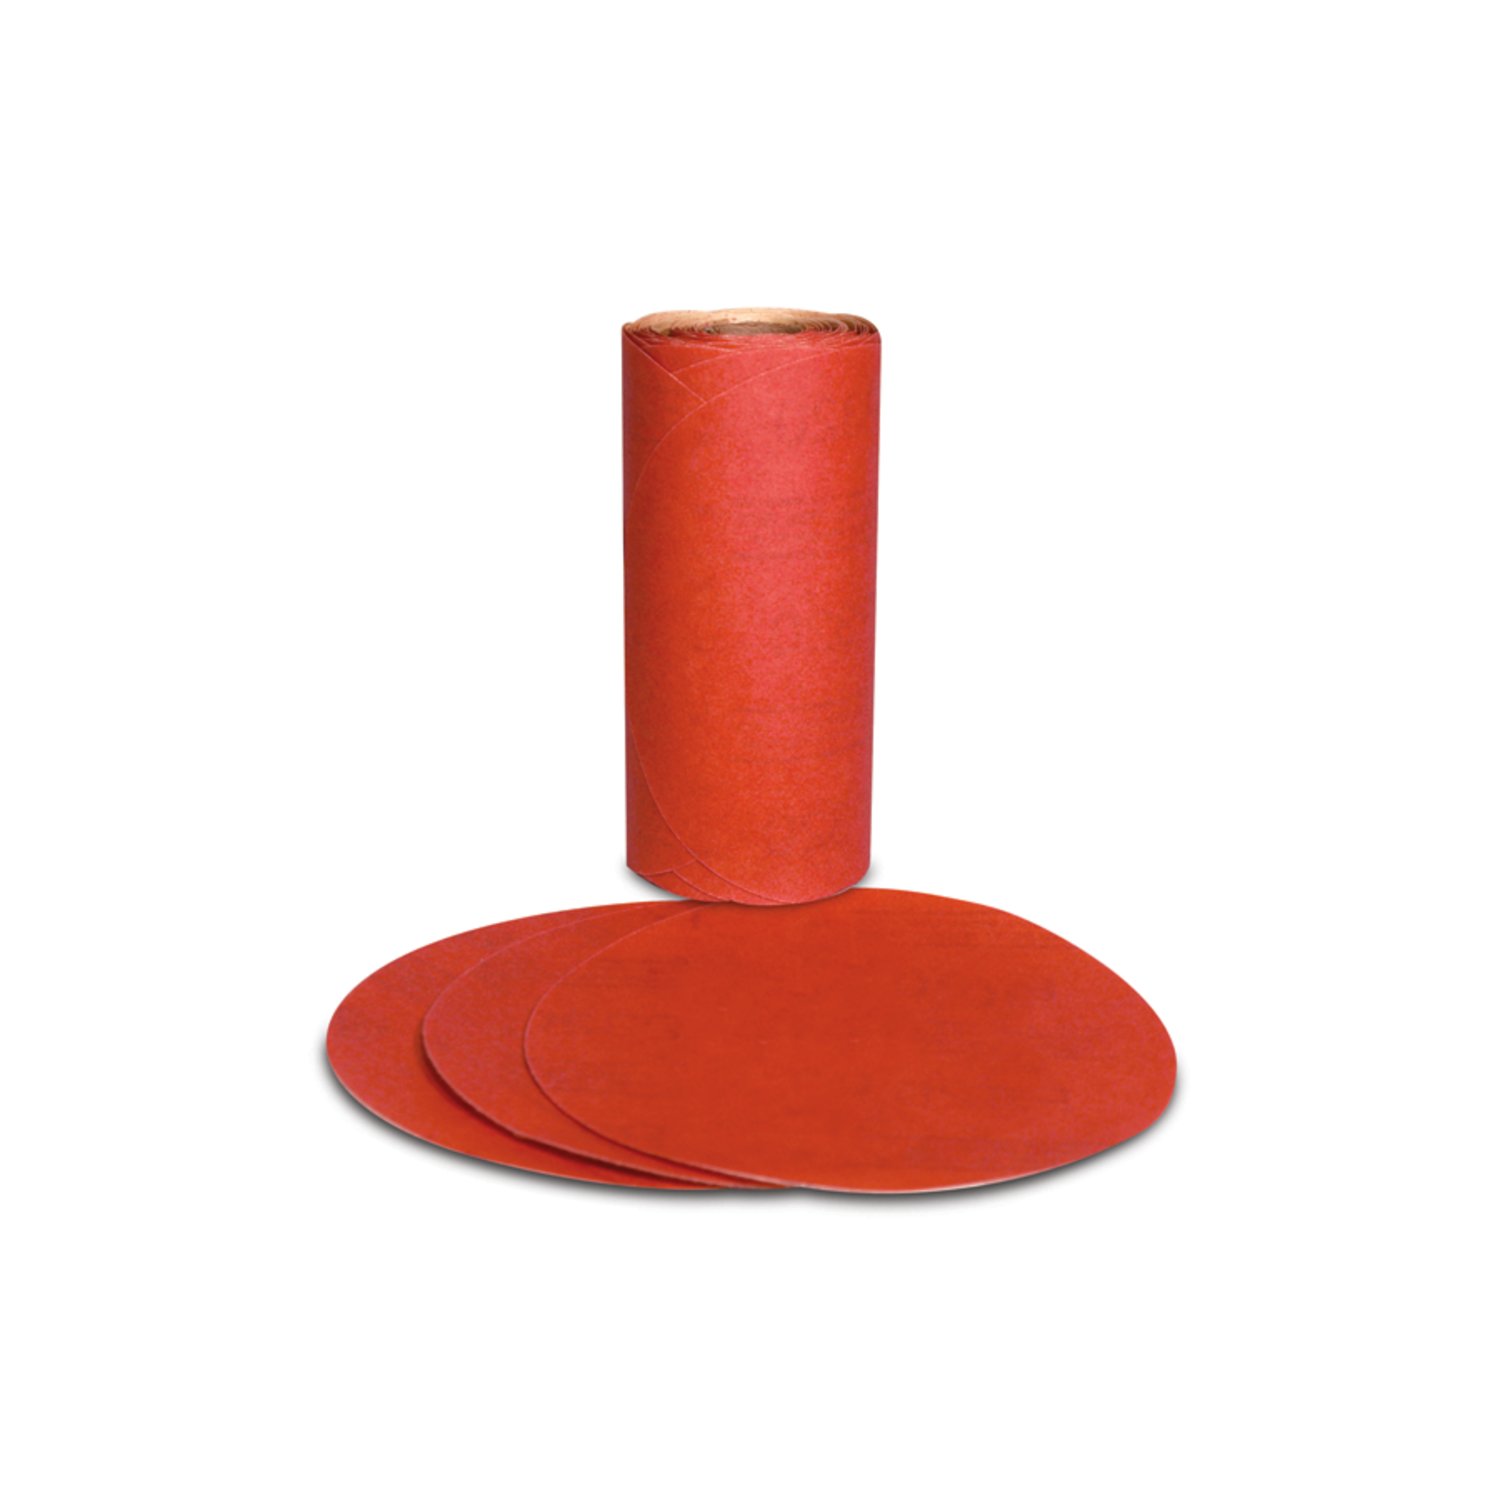 7000119910 - 3M Red Abrasive PSA Disc, 01602, 5 in, P400, 100 discs per roll, 6
rolls per case